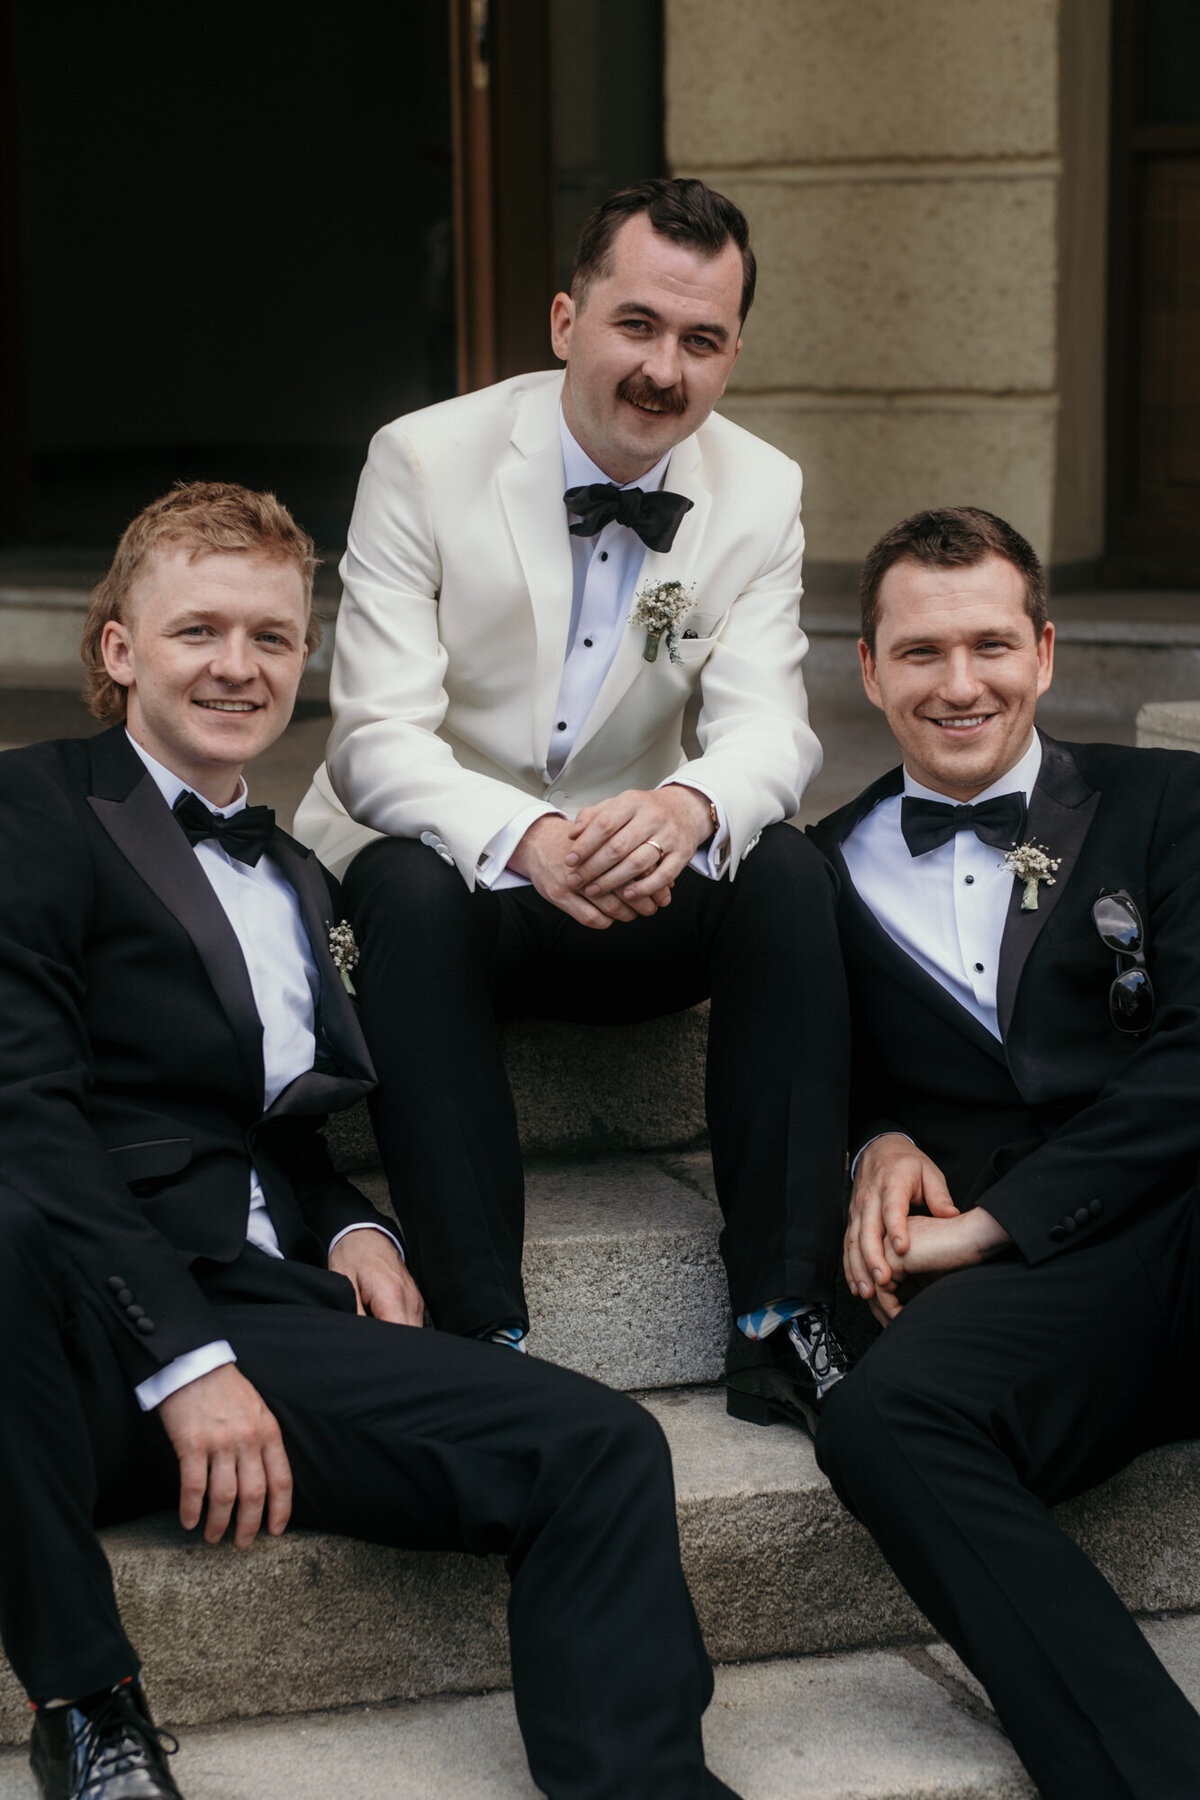 Der Bräutigam posiert entspannt sitzend mit seinen zwei Freunden.